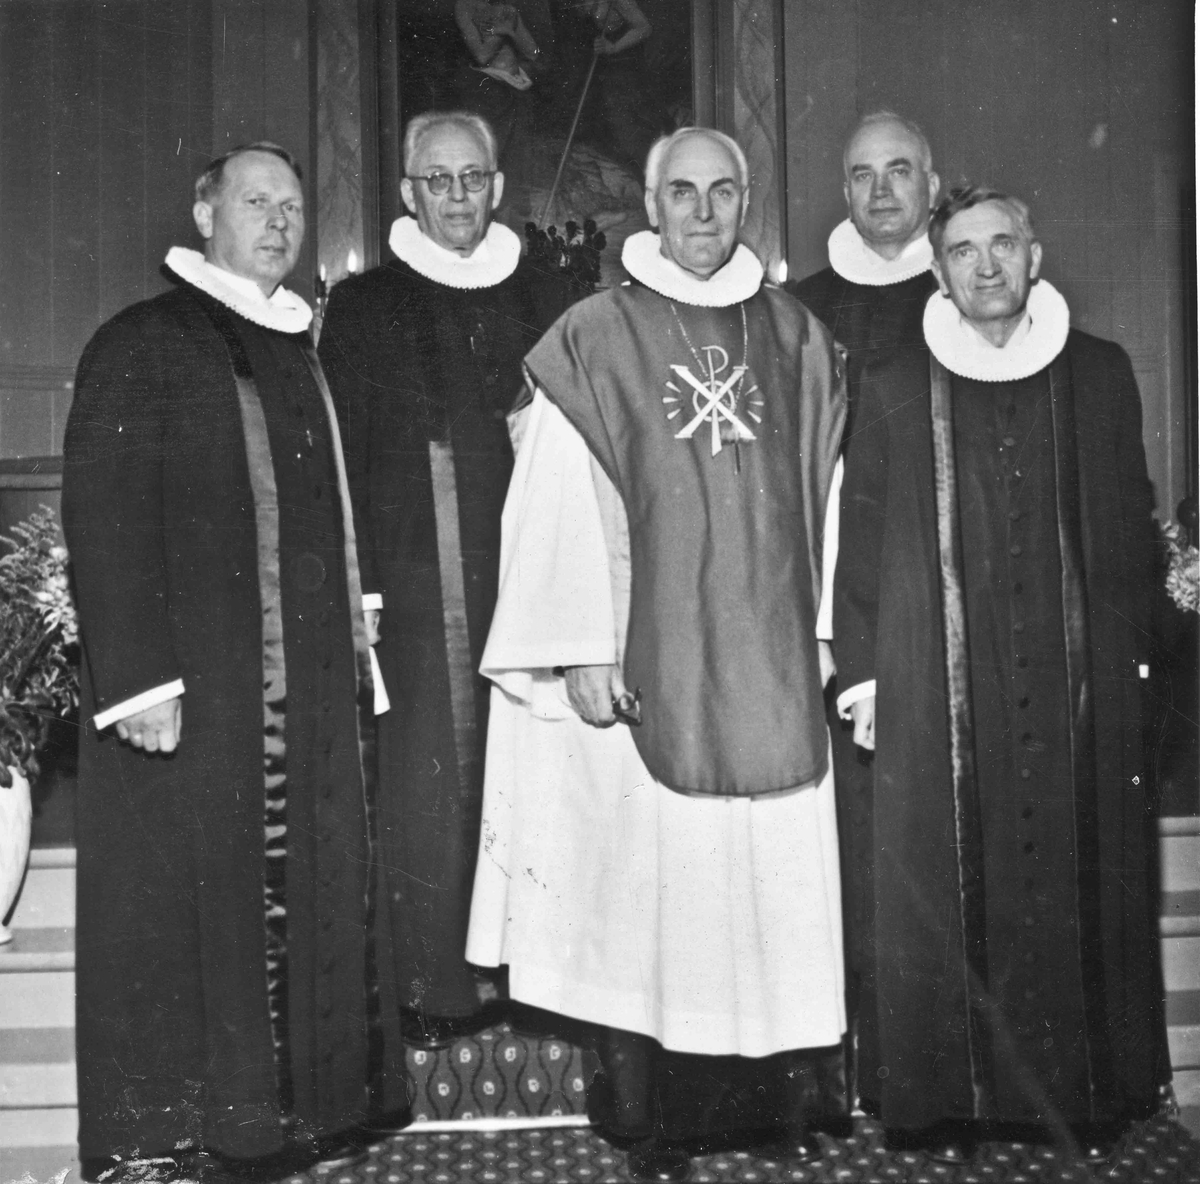 100-års jubileum i Langset kirke i 1959.
Fra v.: X, X, Biskop Smedmoe, Aksel Kragseth (prest på Langset), sogneprest Nils Taraldseth.